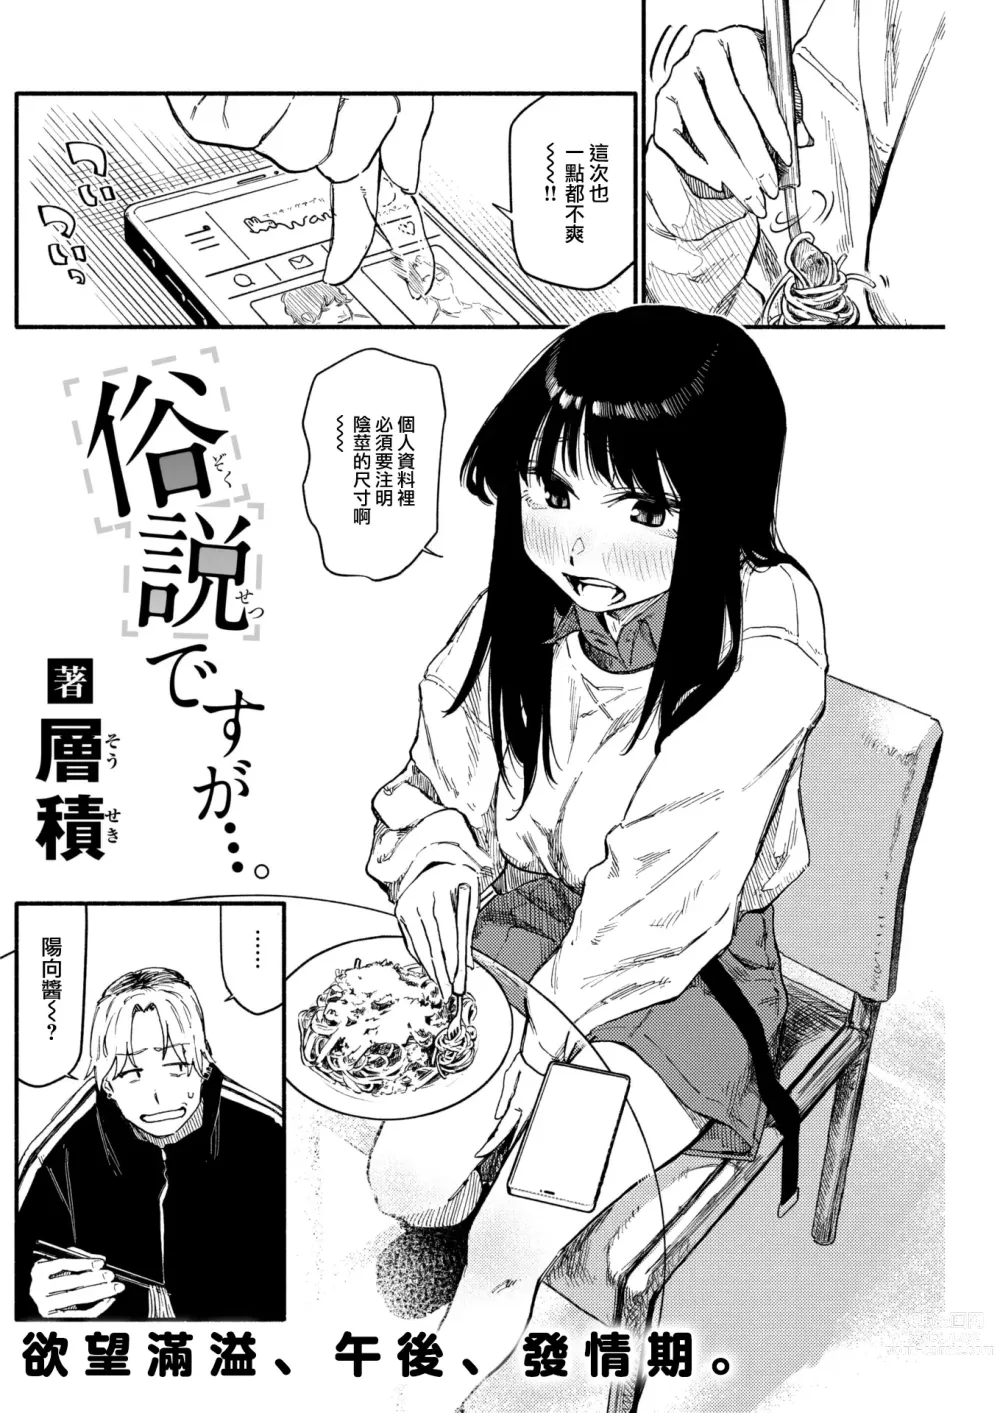 Page 3 of manga Zokusetsu desu ga....